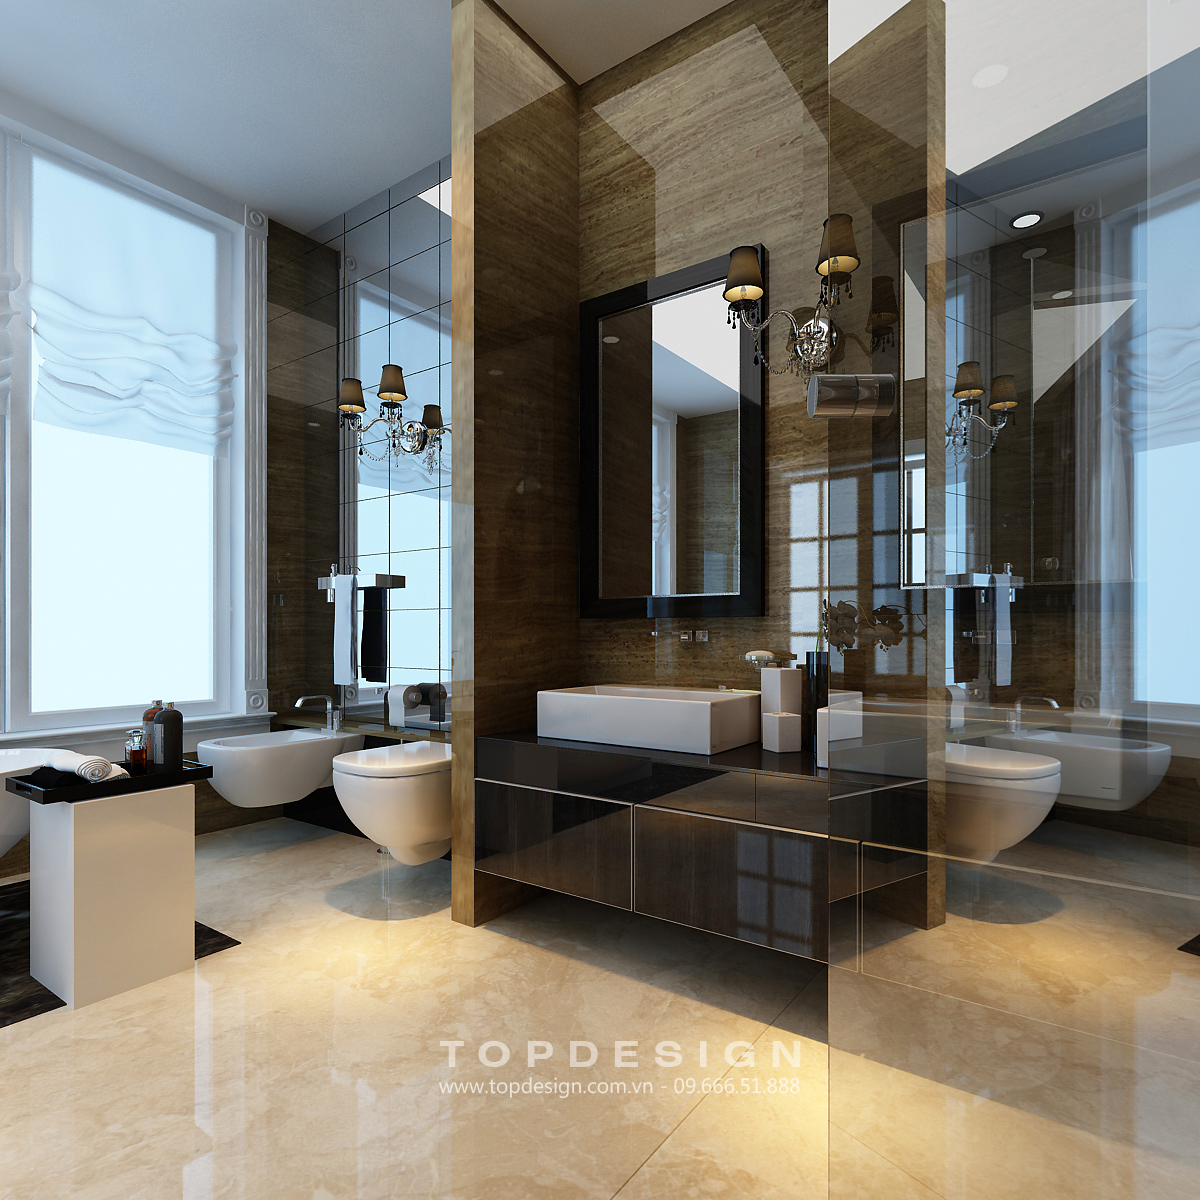 Giá thiết kế nội thất biệt thự - TOPDESIGN phòng tắm